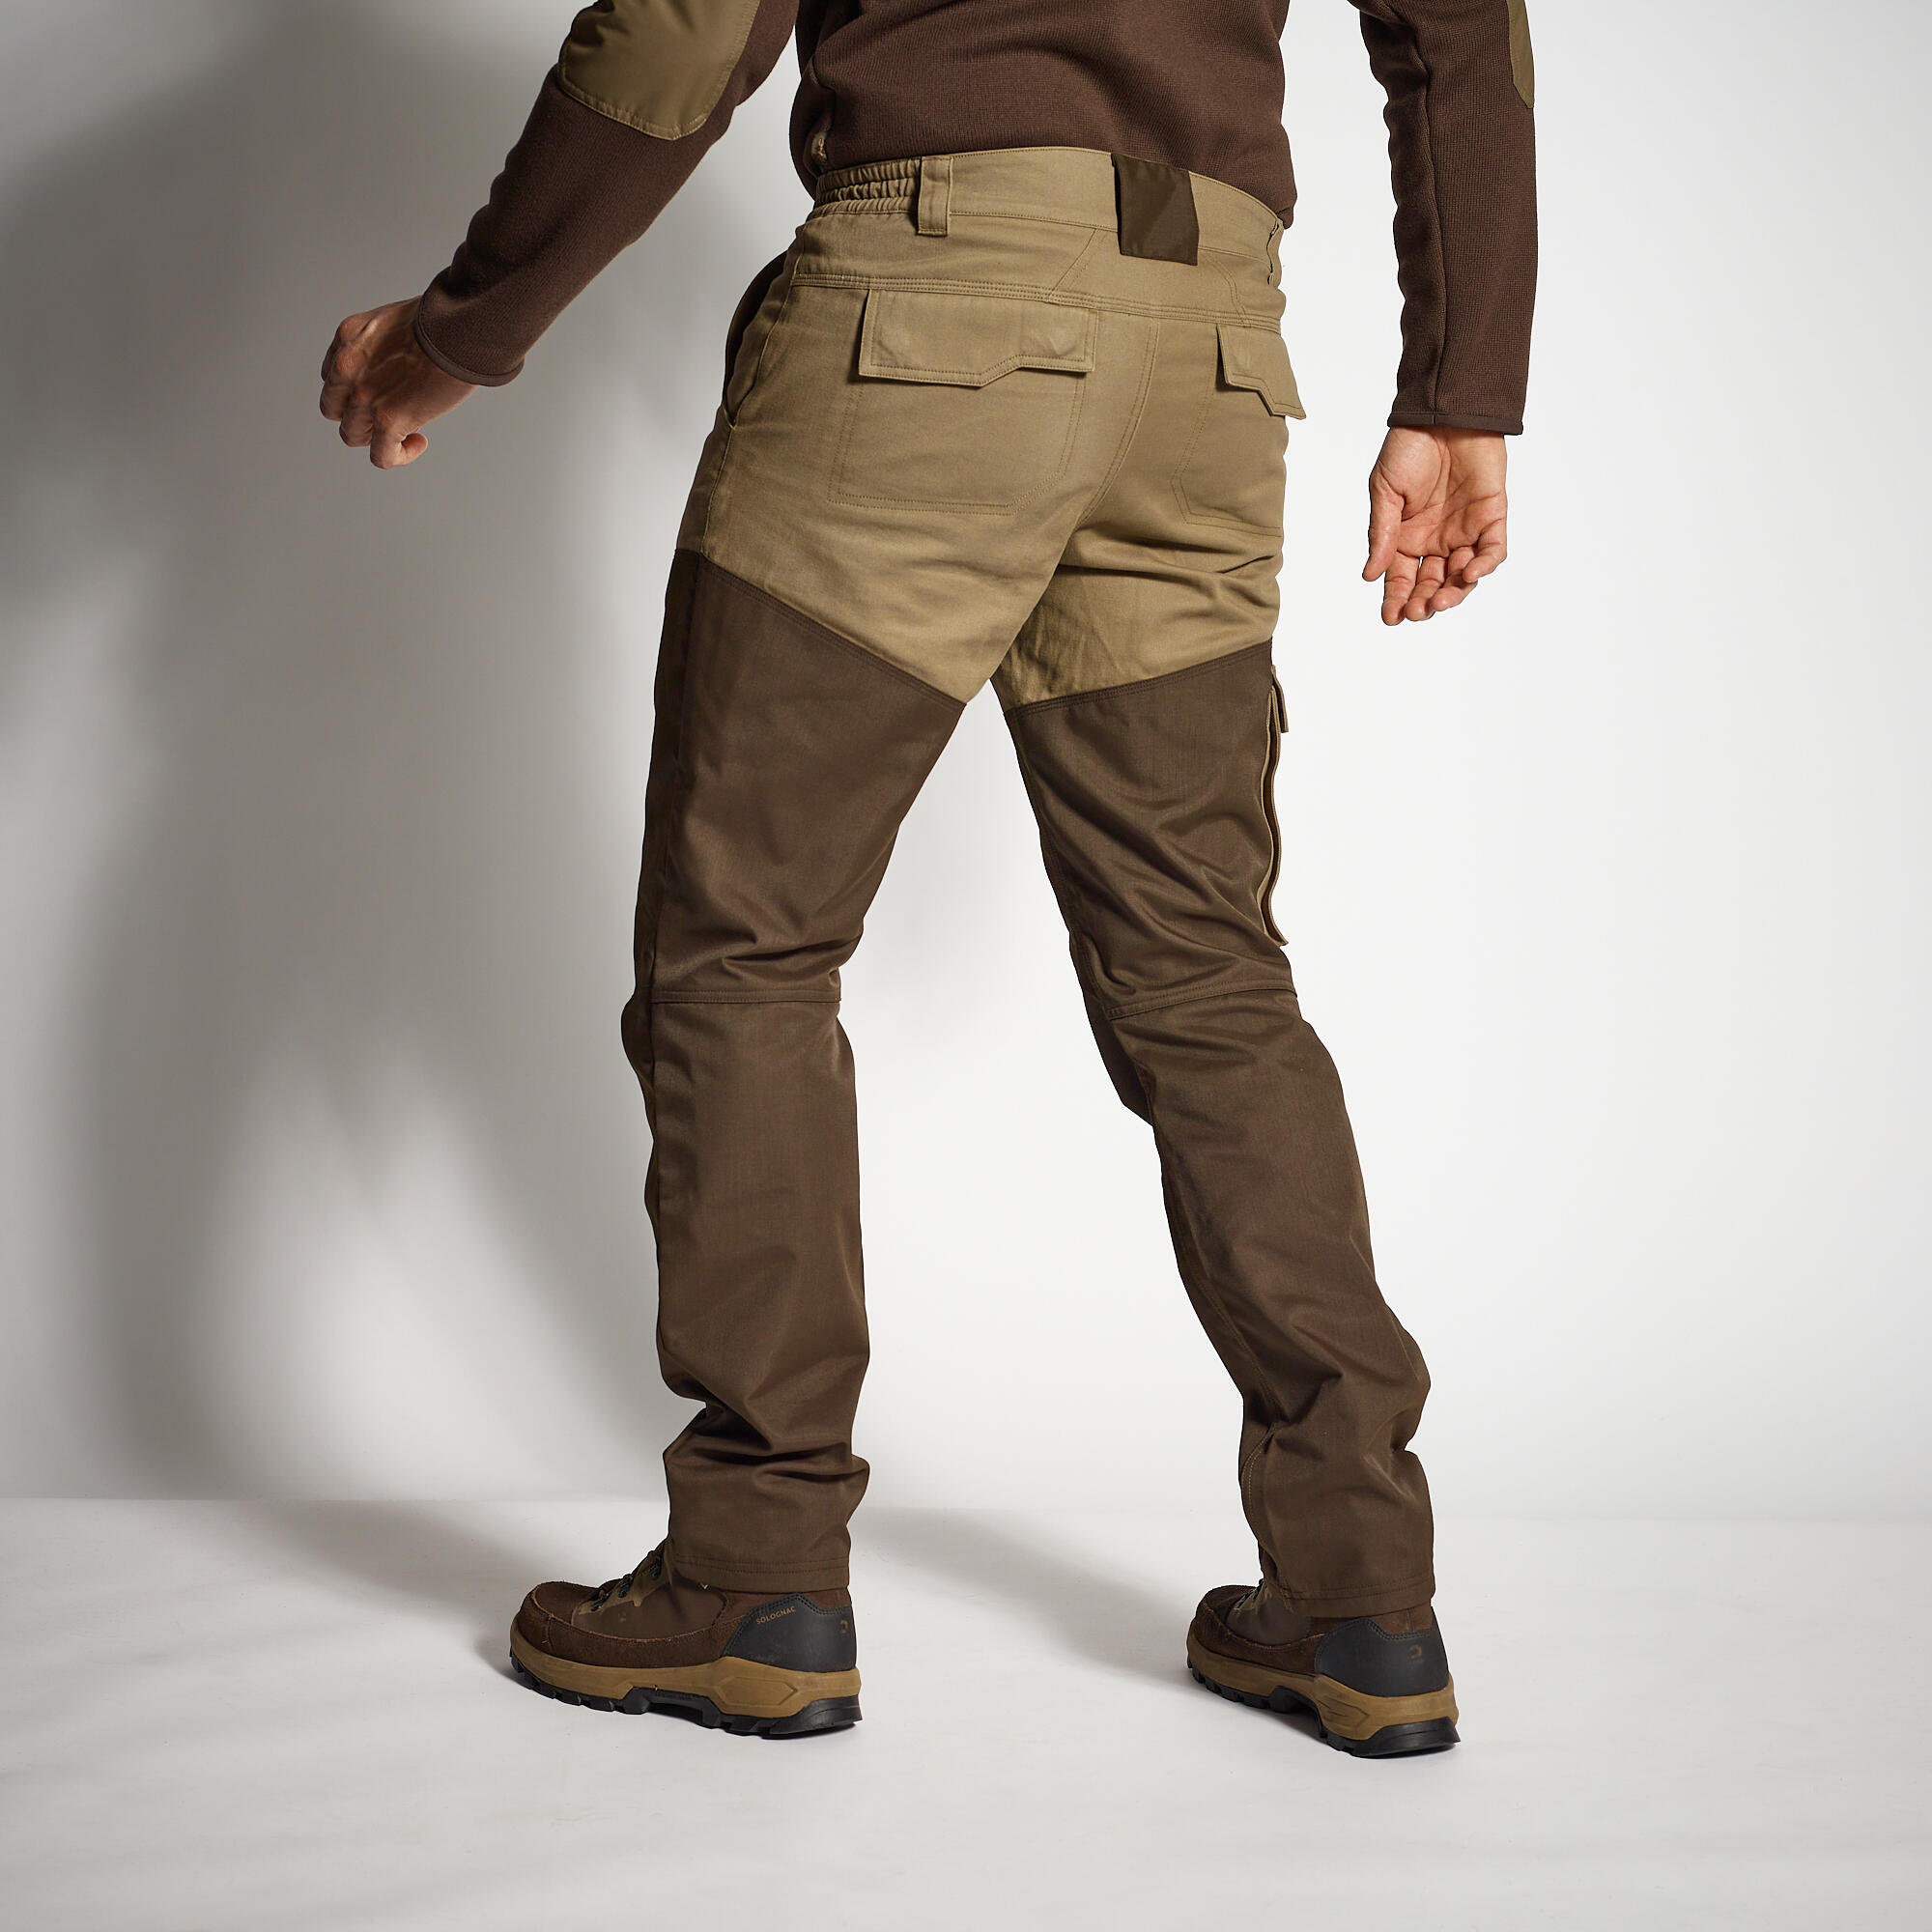 Pantalon de chasse renfort - 520 marron - SOLOGNAC